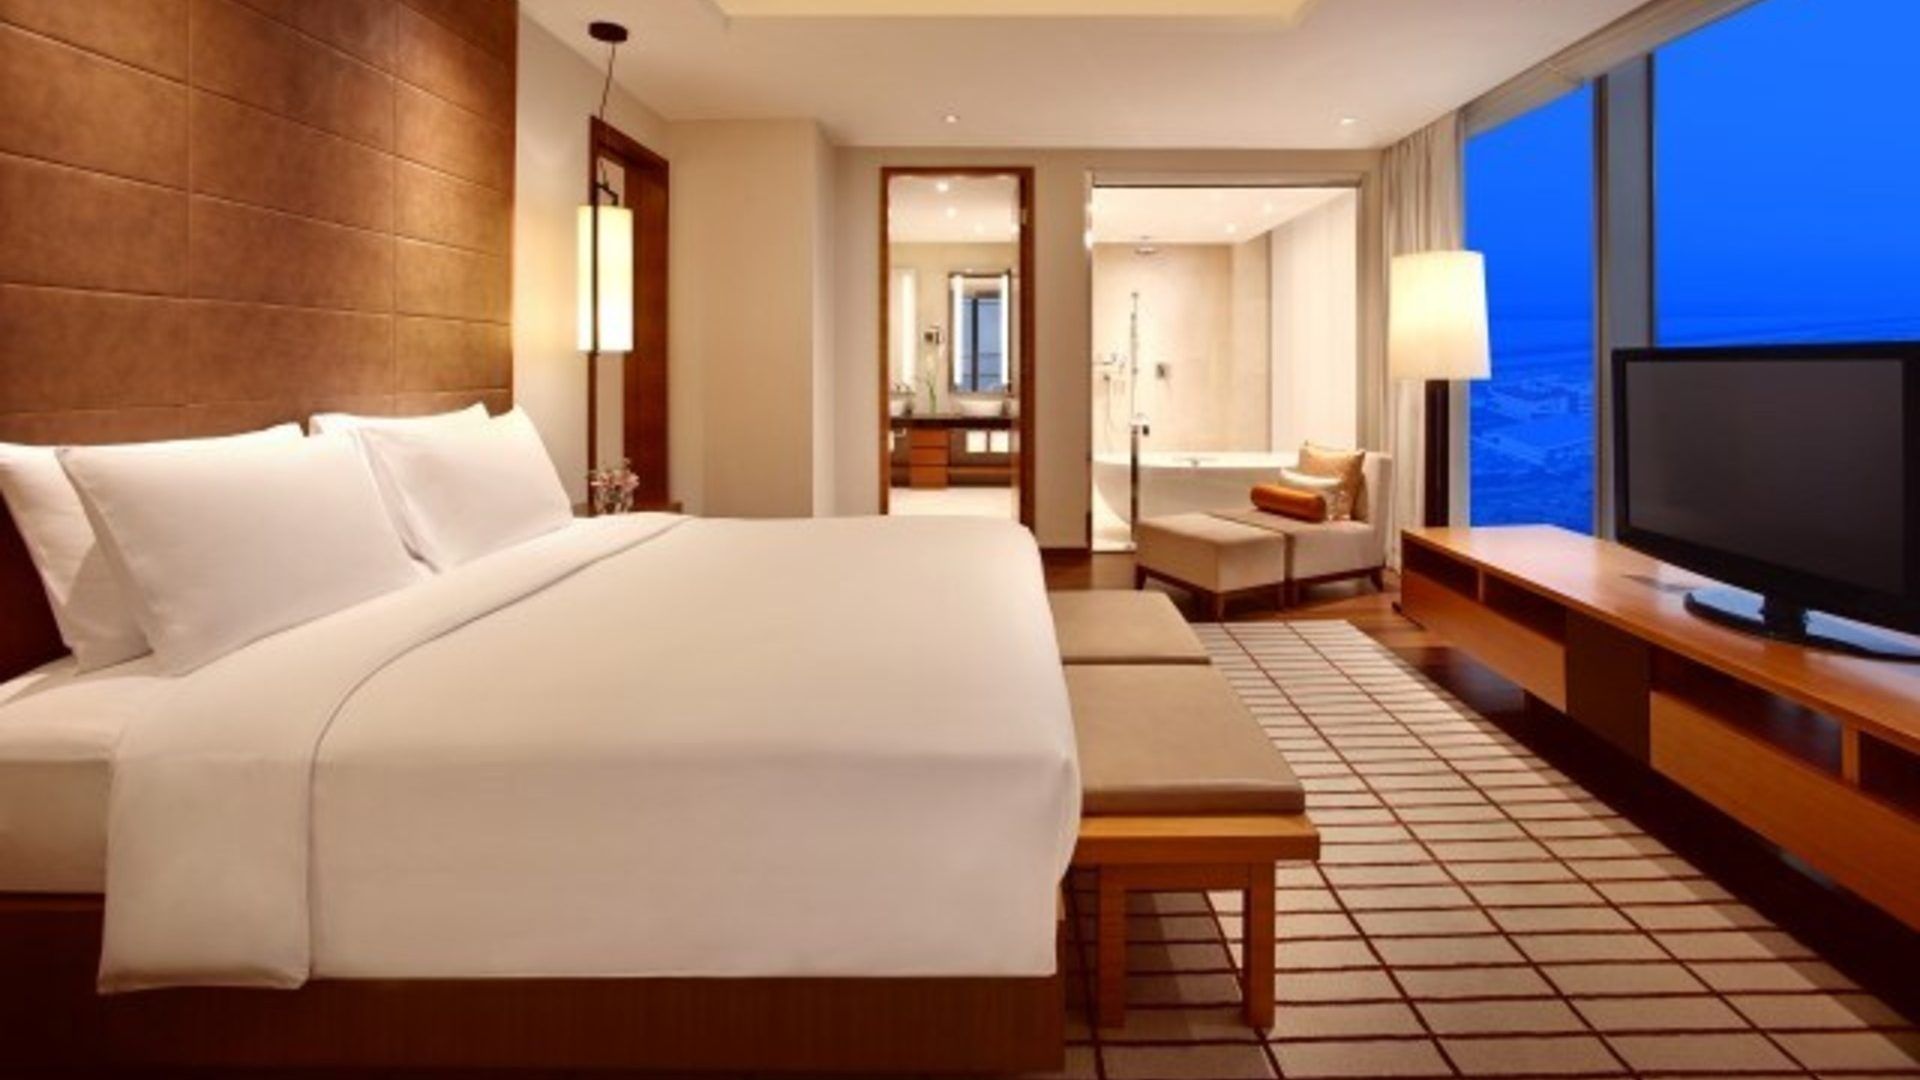 macau hotel 2023 - grand hyatt macao